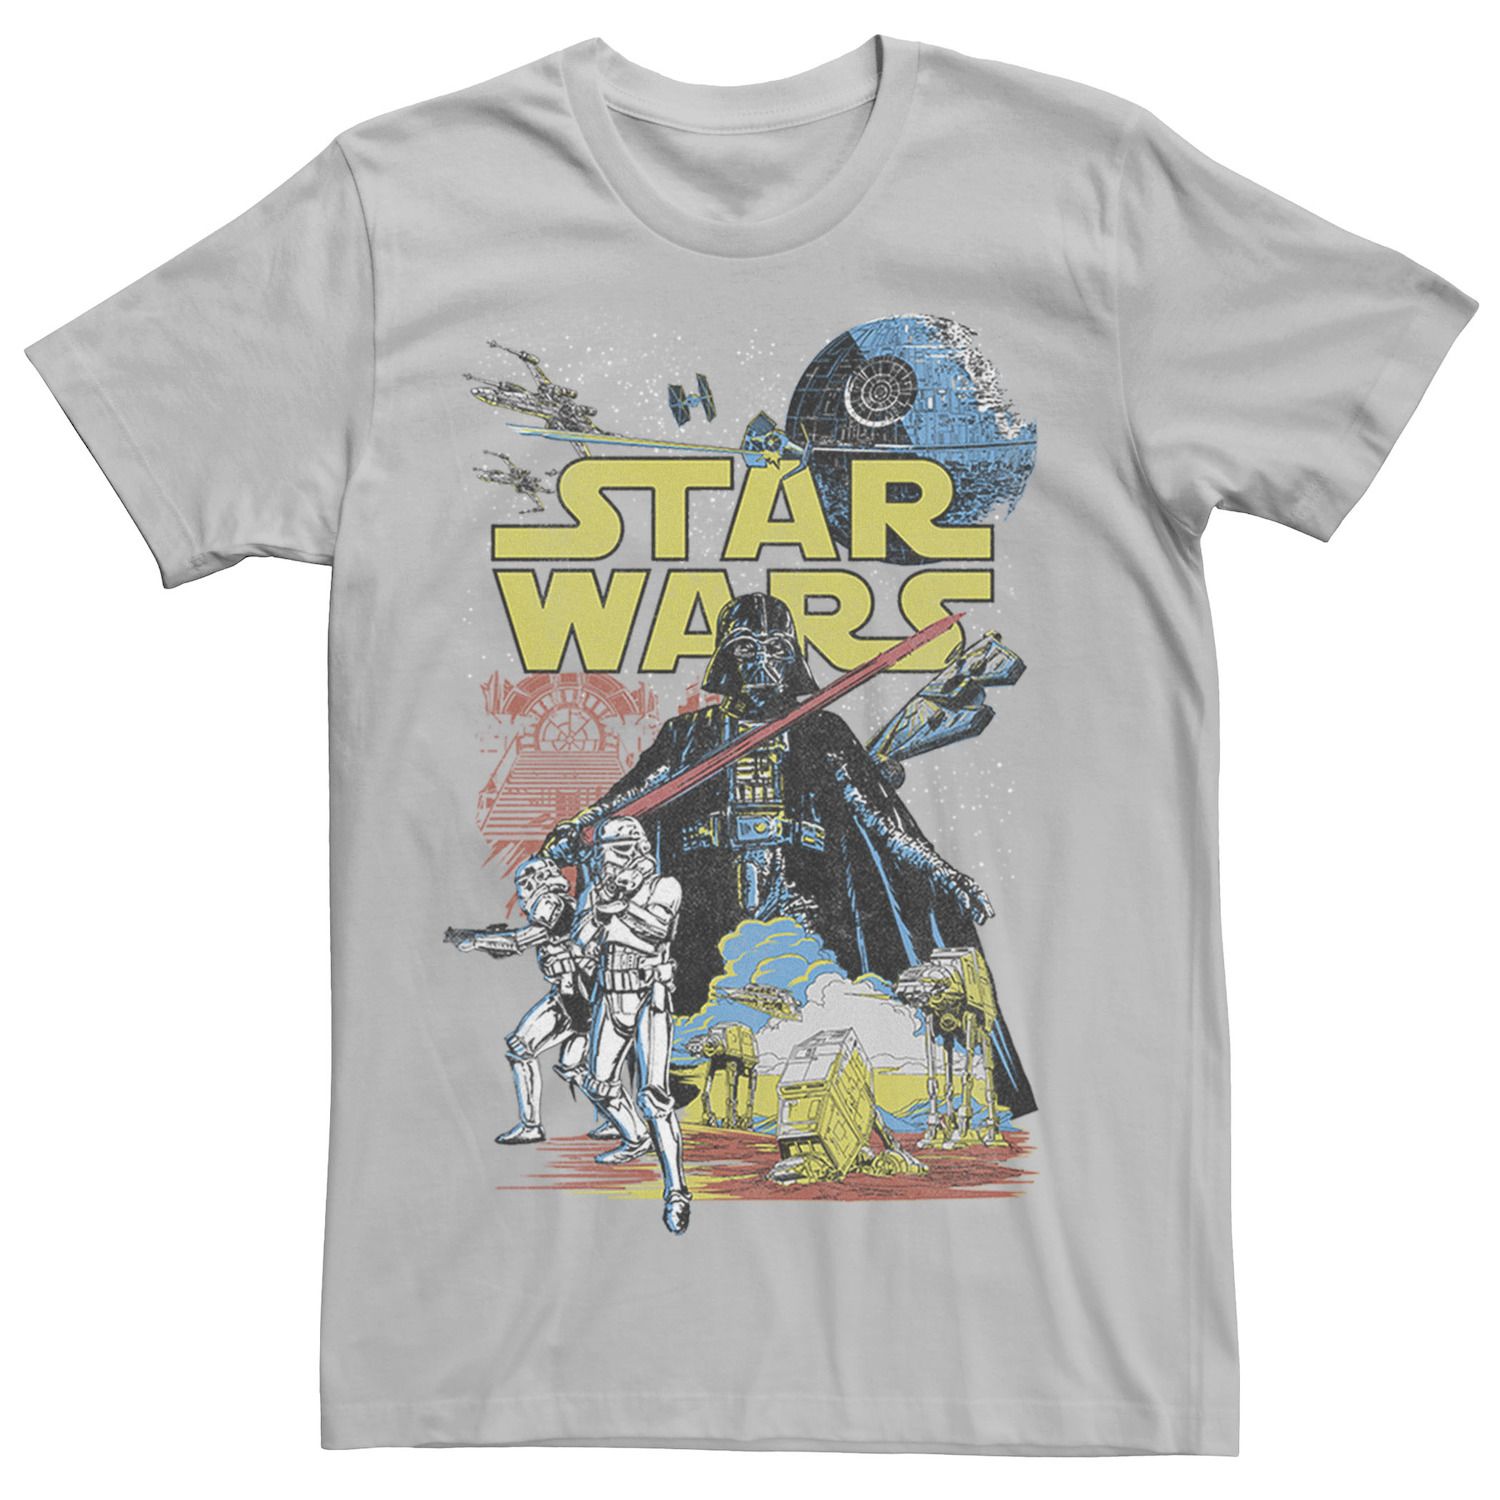 Мужская классическая футболка с графическим плакатом Rebel Star Wars, серебристый